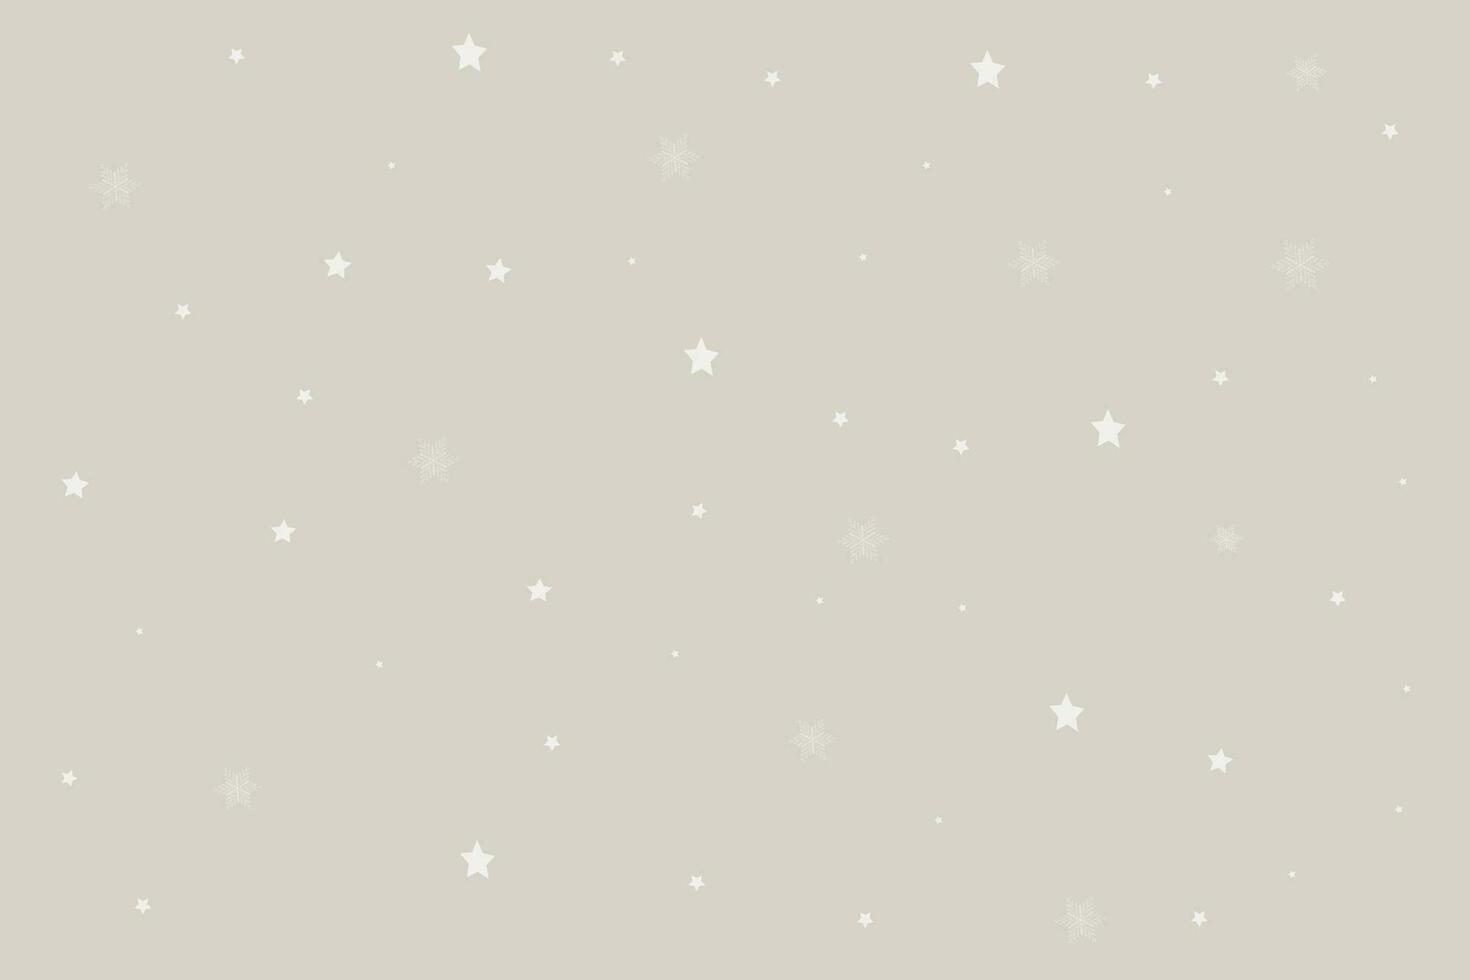 vinter- mysigt bakgrund med vit stjärnor och snöflingor på en beige bakgrund. för kort, t-shirts, bakgrunder. vektor. vektor